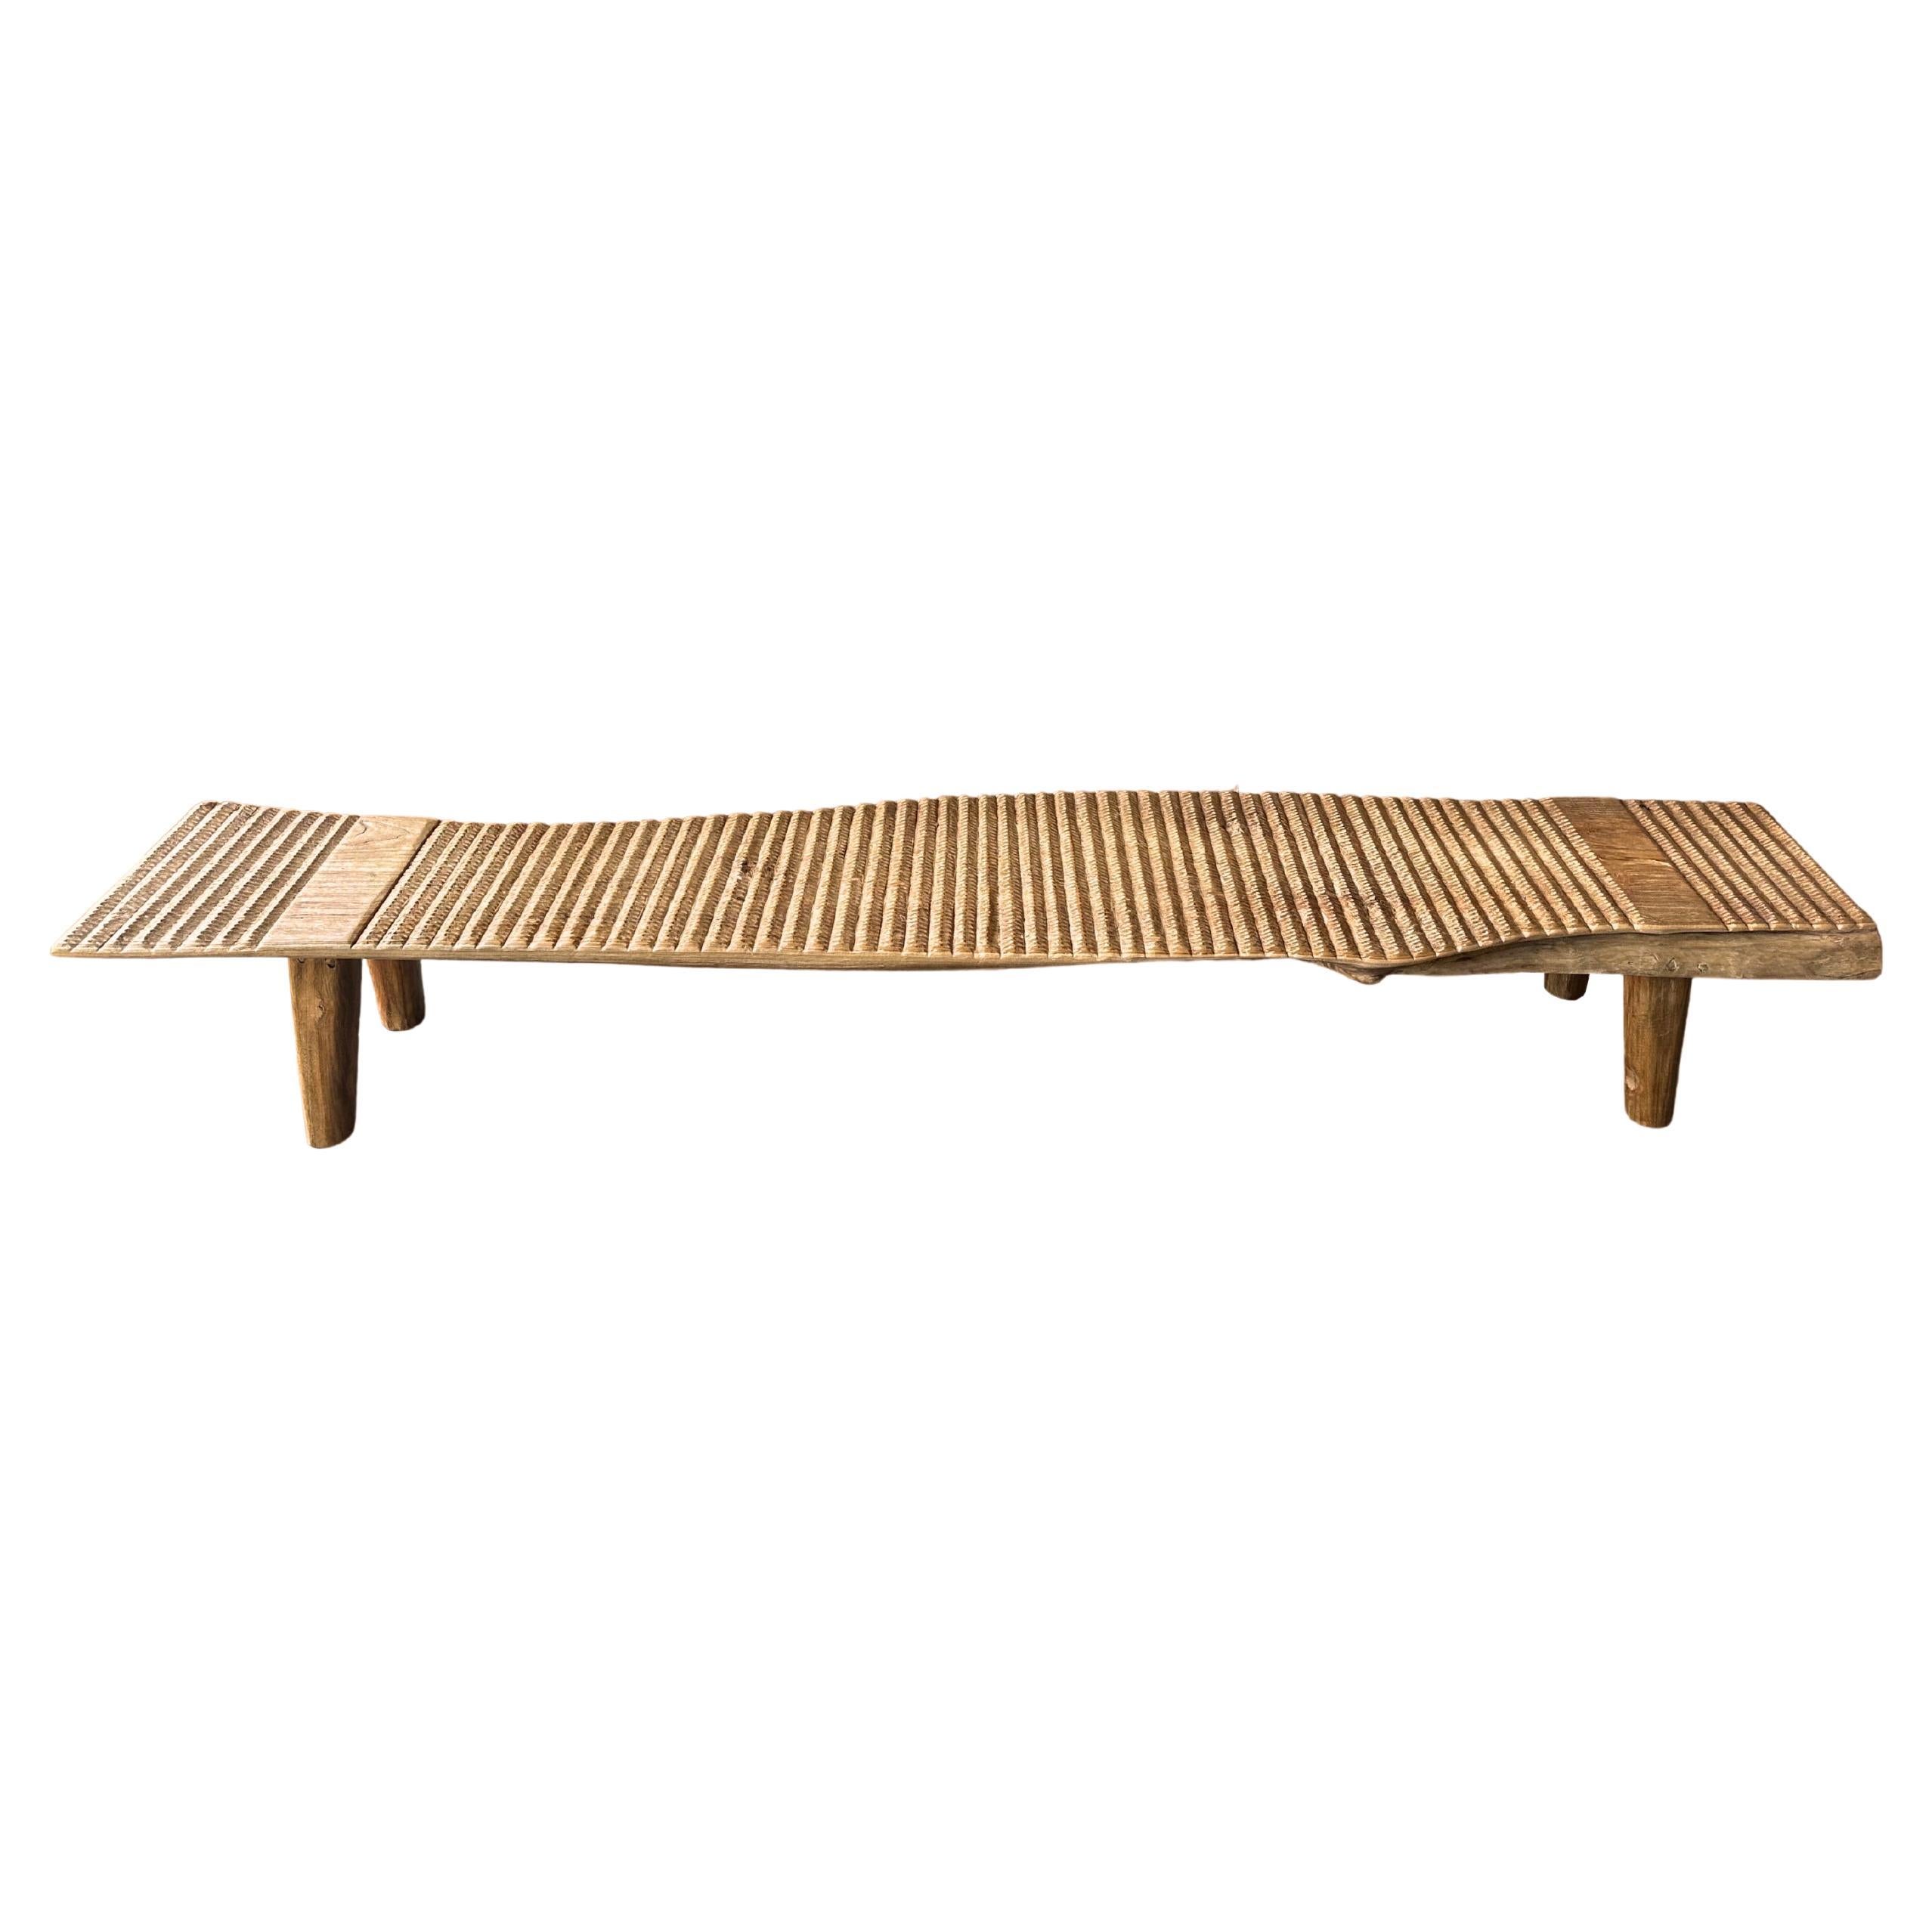 Teak Wood Sculptural Long Bench, Carved Detailing, Modern Organic For Sale